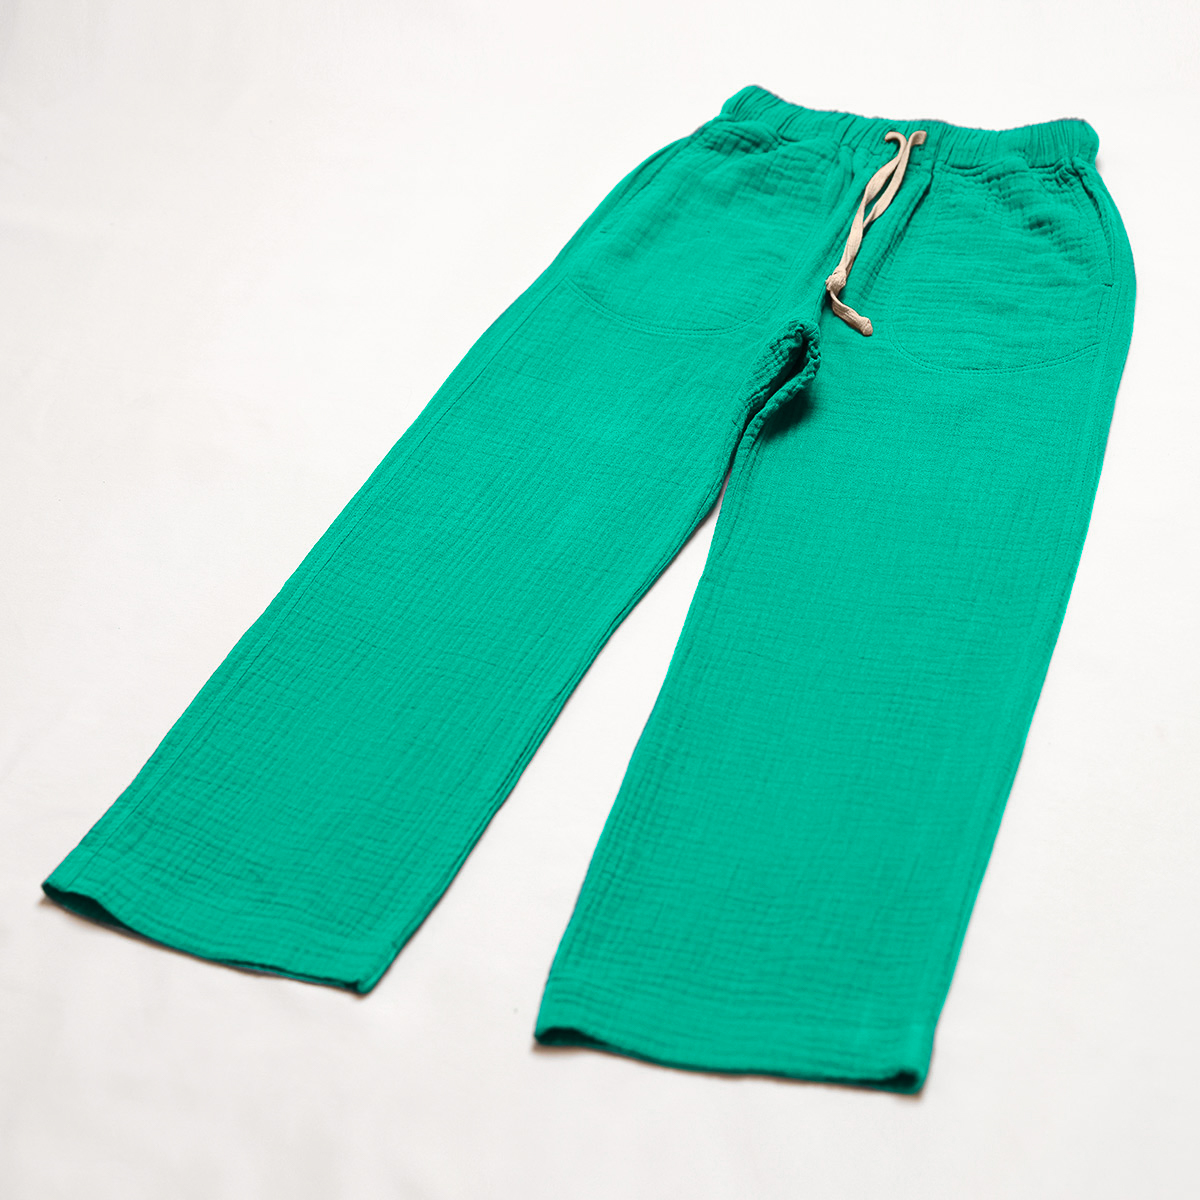 Detaliu pantaloni lungi din muselină - Energy, Emerald